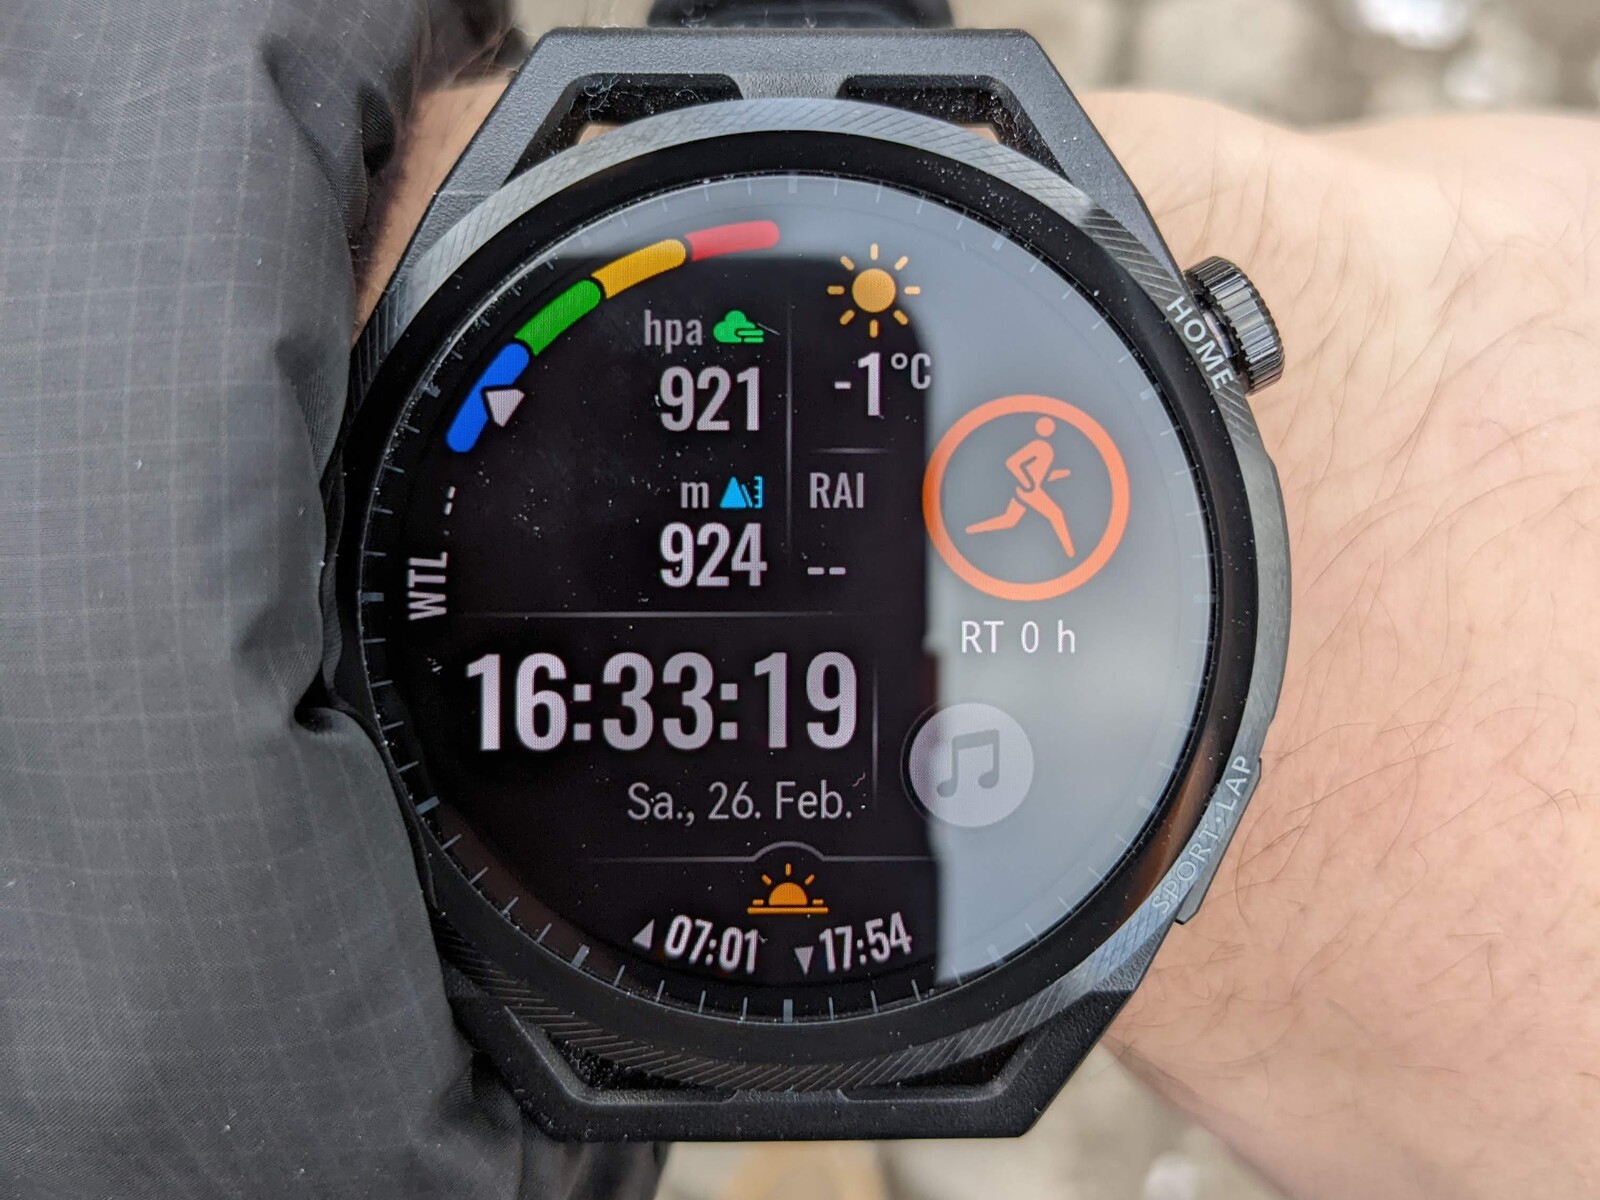 korn Konsulat Søjle Huawei Watch GT Runner review - Smartwatch for sports fans -  NotebookCheck.net Reviews